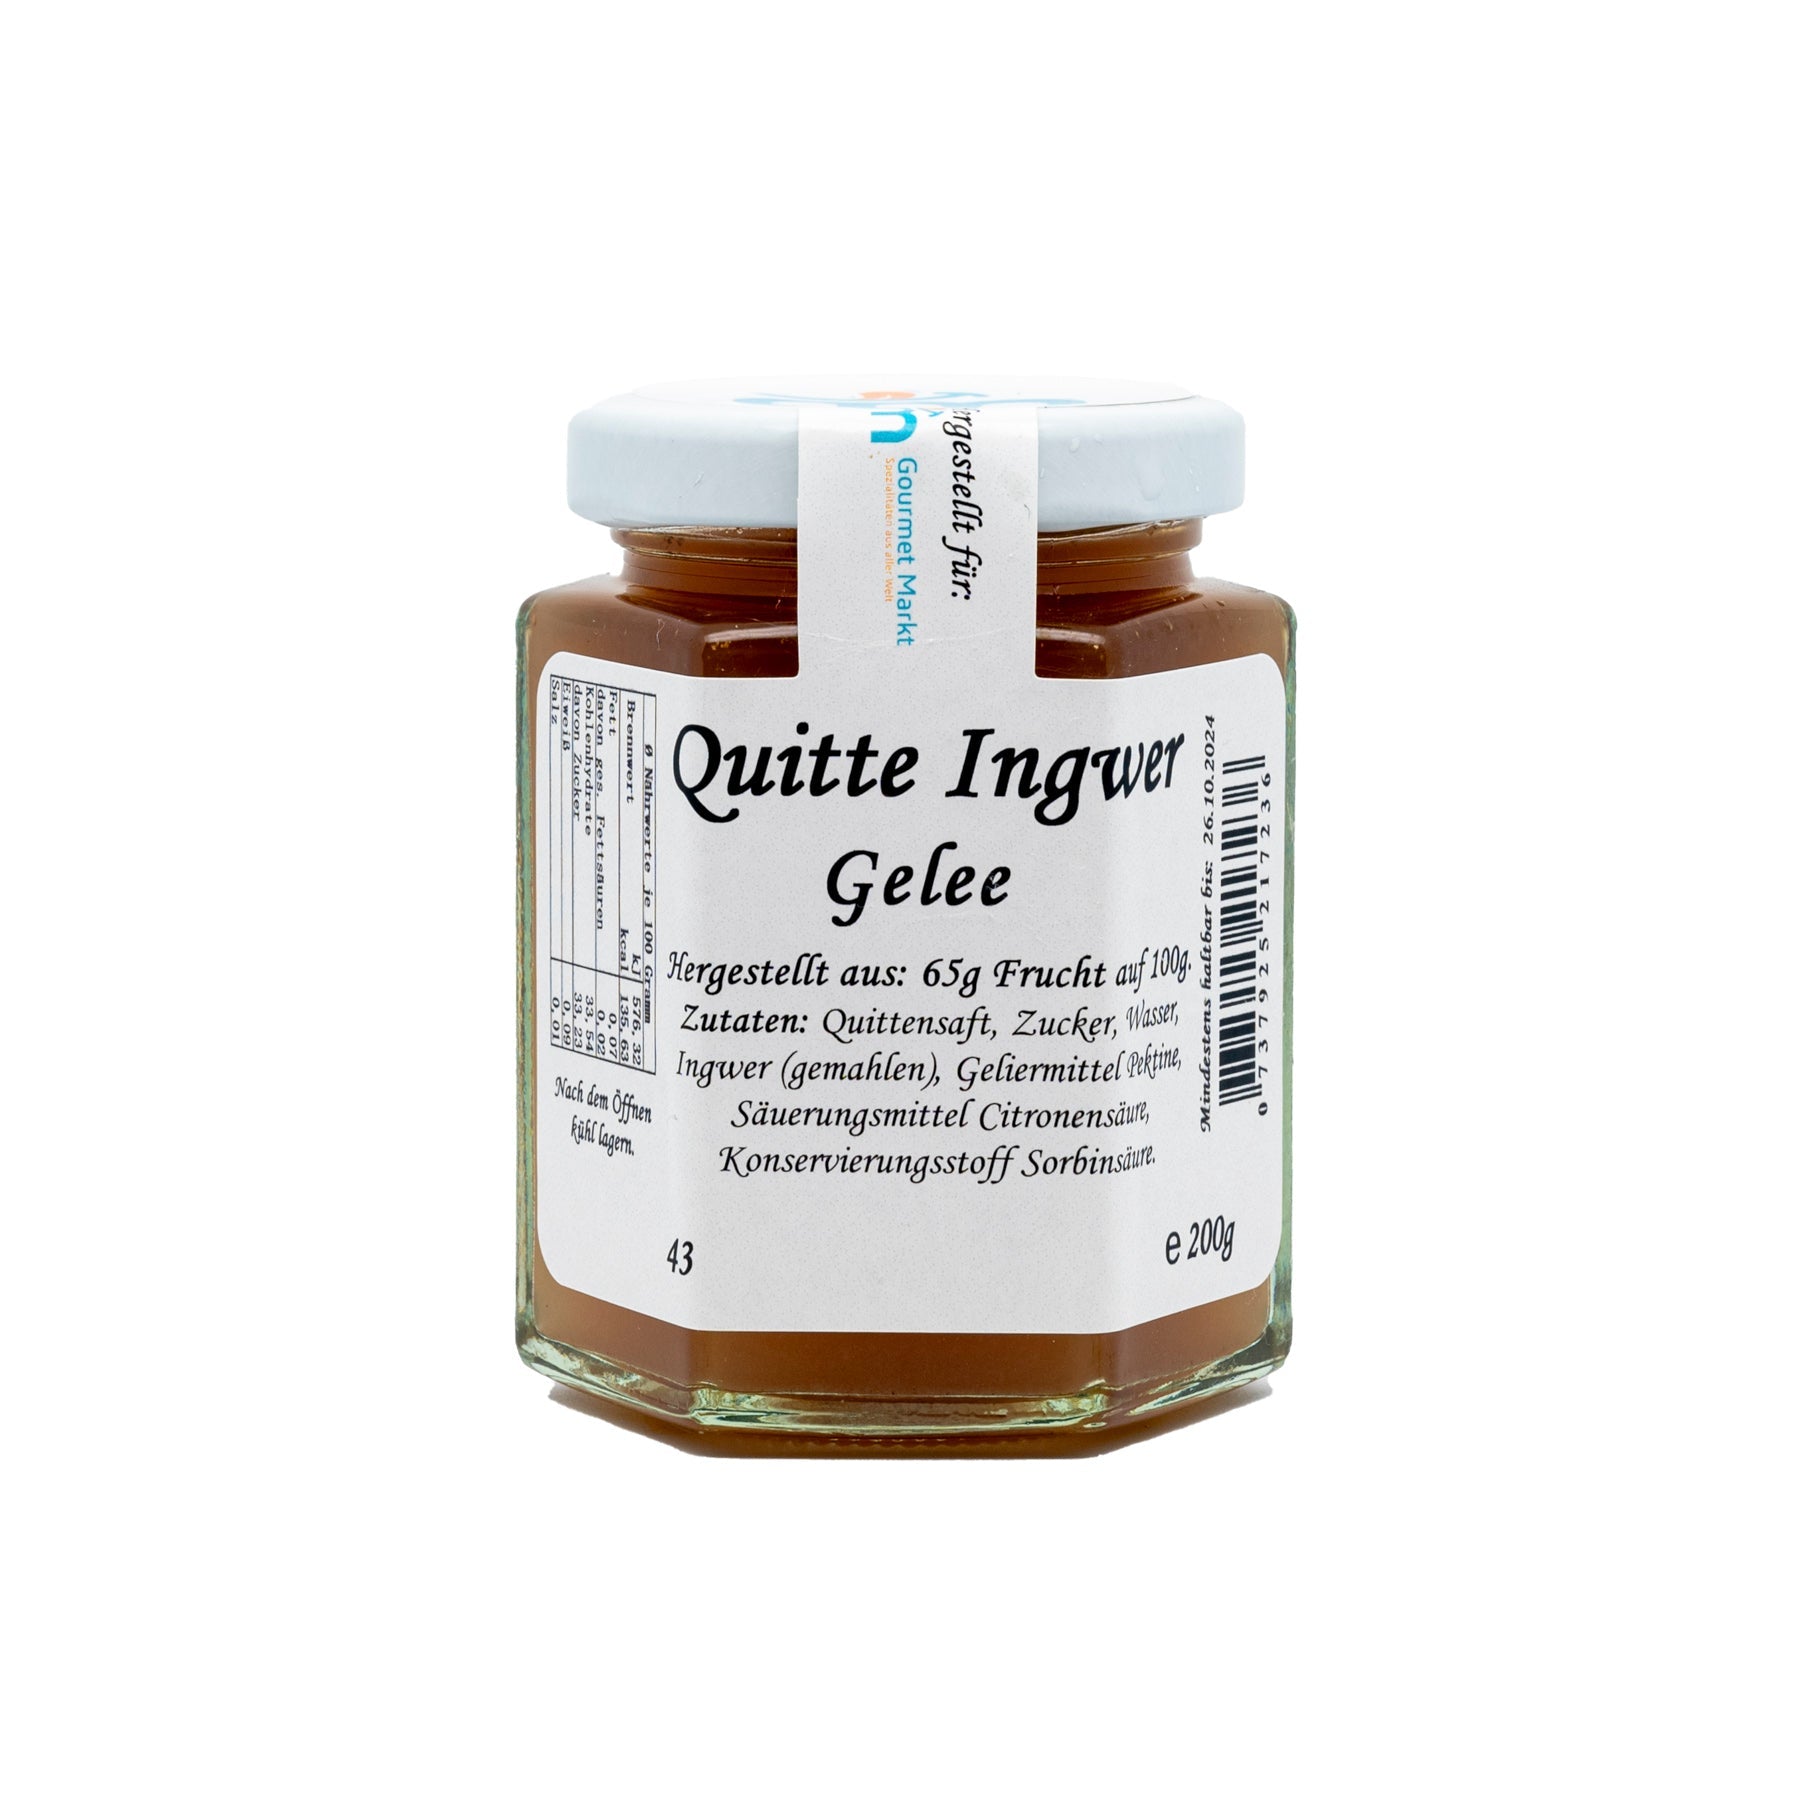 Quitte Ingwer Gelee (200g) - Gourmet Markt - Marmeladen Manufaktur